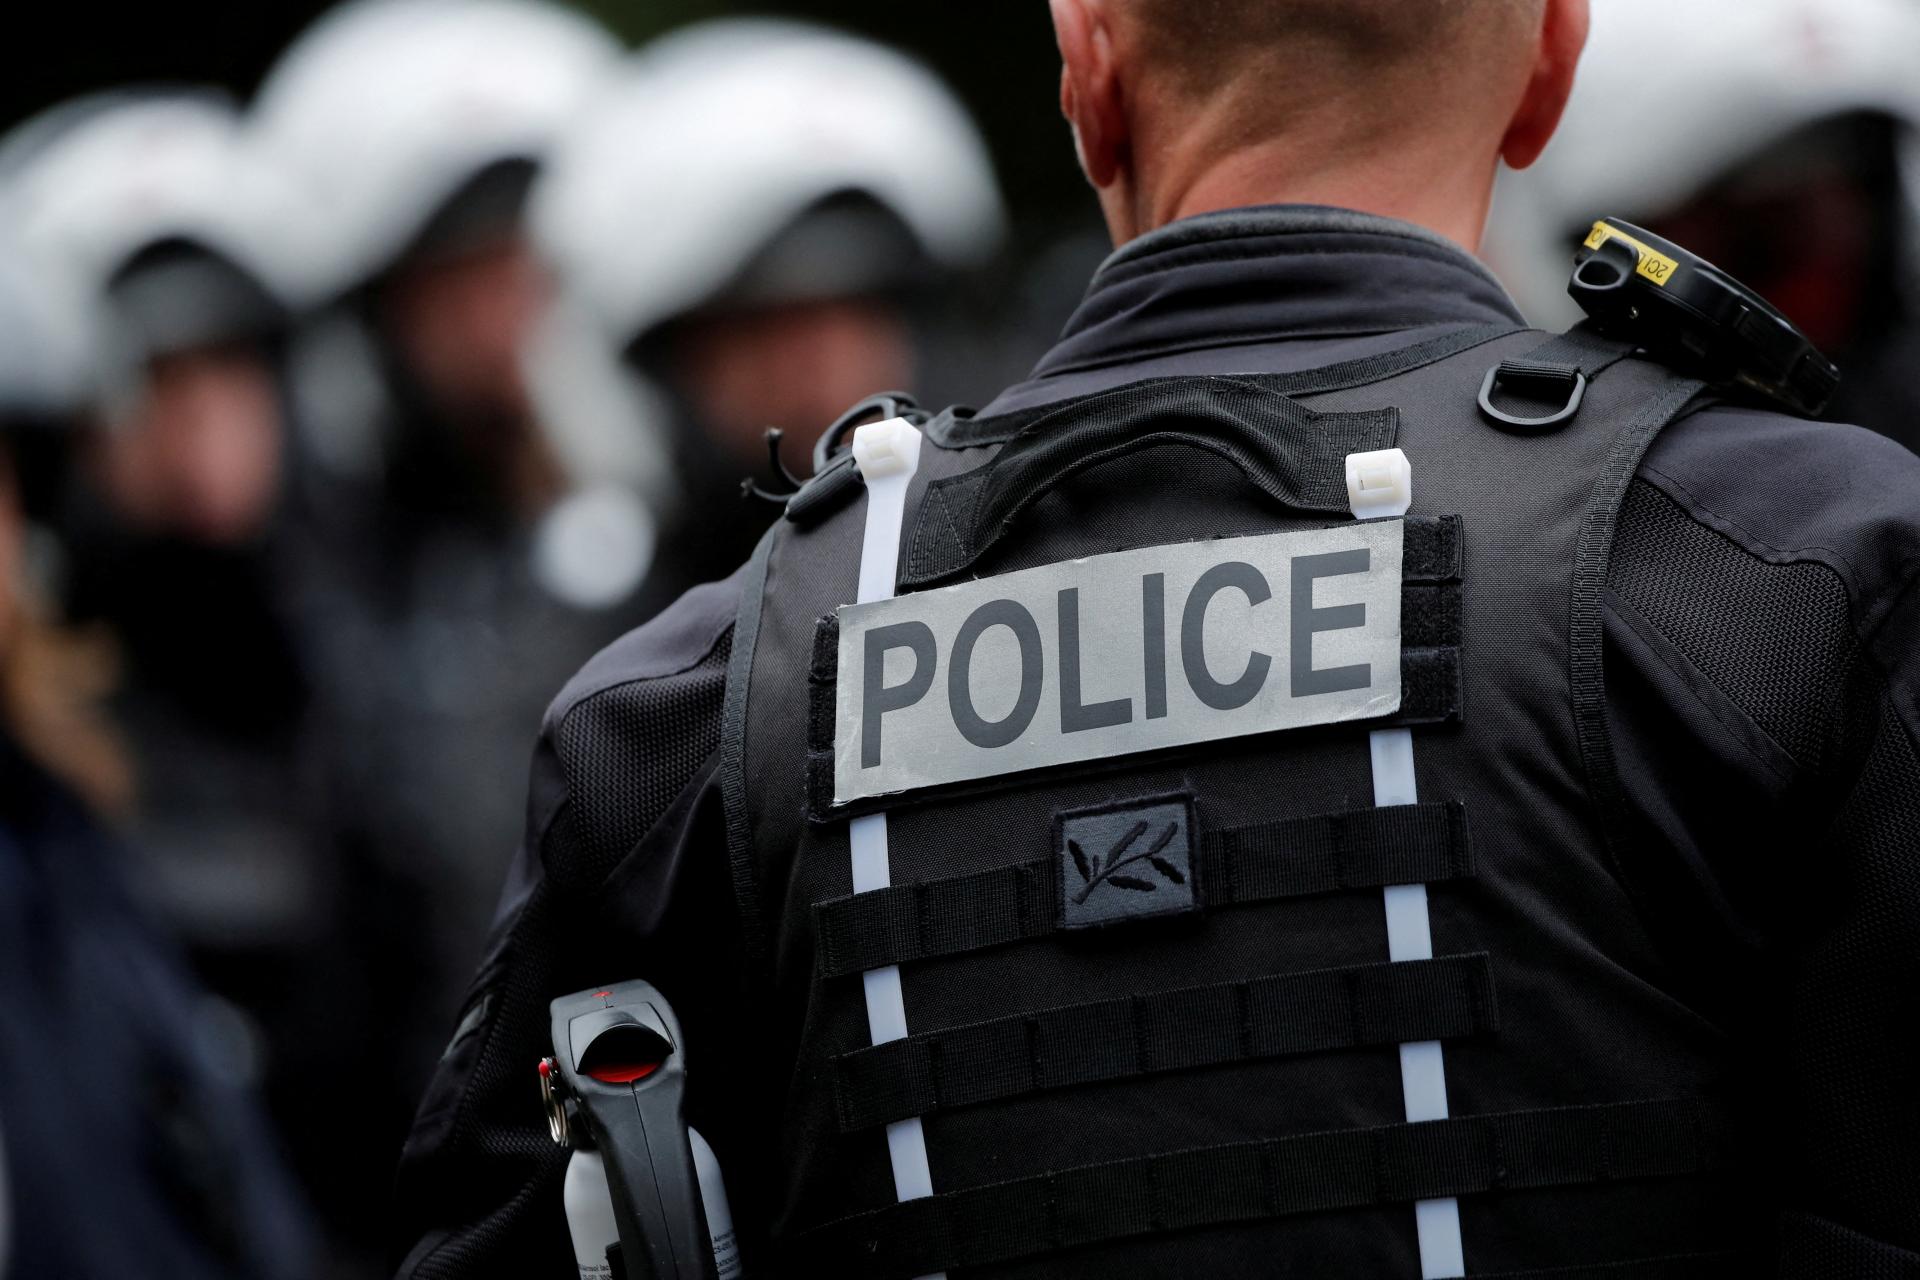 Francúzka polica našla v byte štyri mŕtve deti a ich matku, otca zadržala